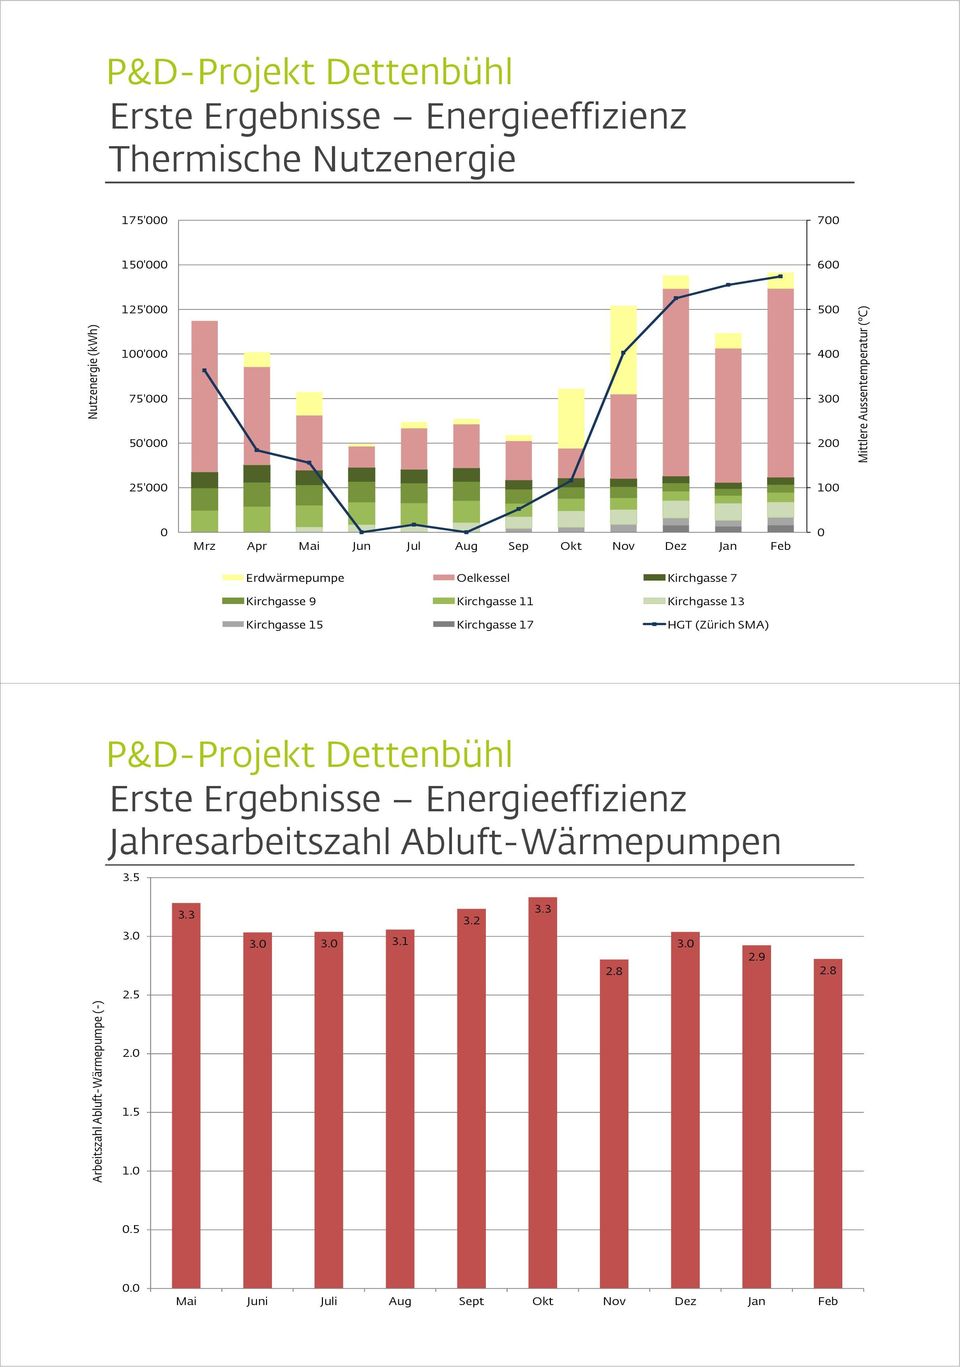 21.4.215 16 Kirchgasse 15 Kirchgasse 17 HGT (Zürich SMA) Erste Ergebnisse Energieeffizienz Jahresarbeitszahl Abluft-Wärmepumpen 3.5 3. 3.3 3.